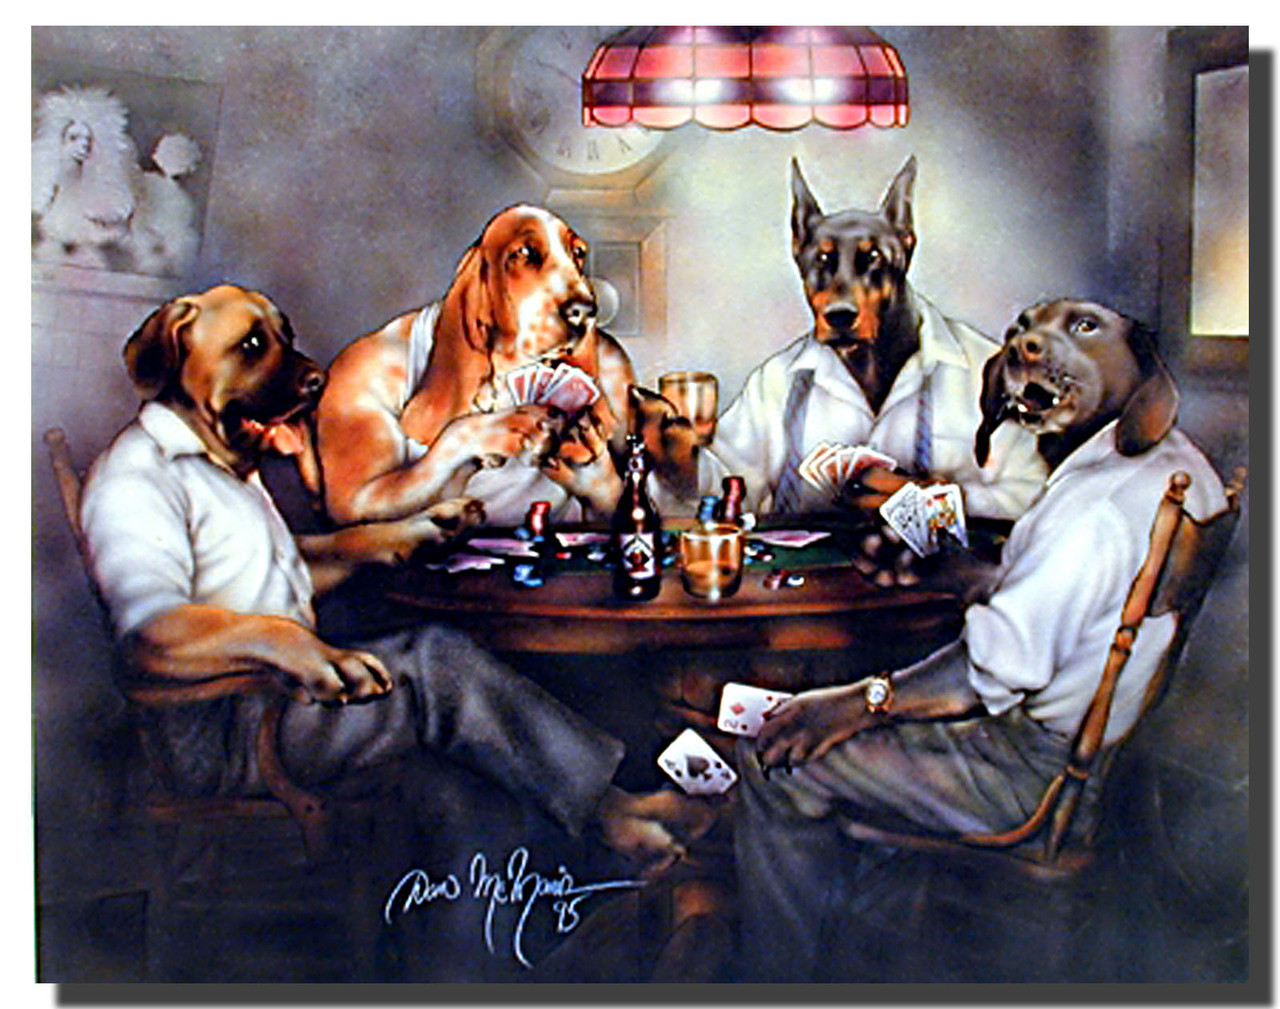 Собаки играют в покер кулидж. Кассиус Кулидж собаки играющие в Покер. Кассиус Кулидж собаки играющие в Покер оригинал. Собаки Покер Кулидж. Собаки играют в Покер картина.